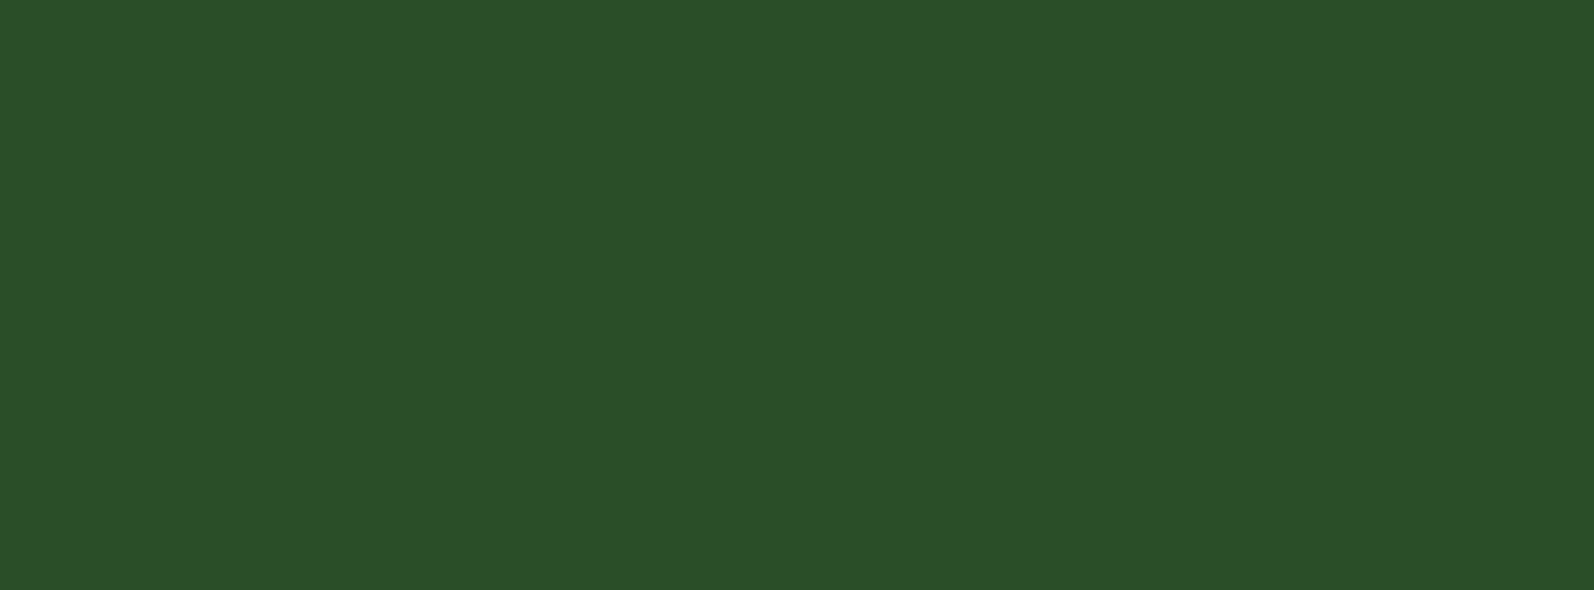 6206 - Çimen Yeşili